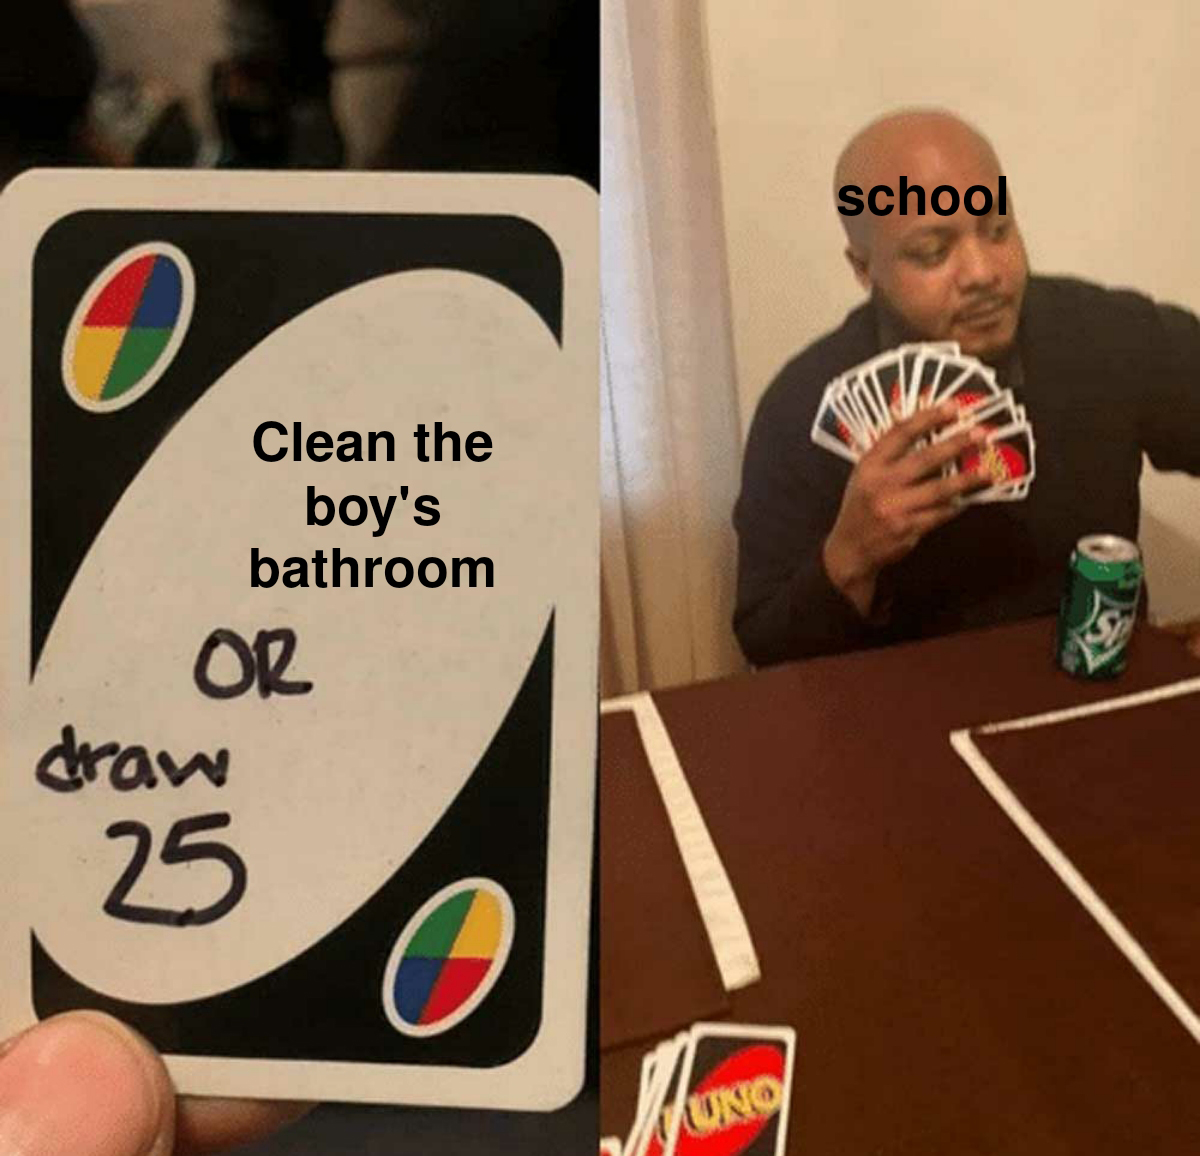 fresh memes - meme card reddit - Or draw Clean the boy's bathroom 25 Uno school